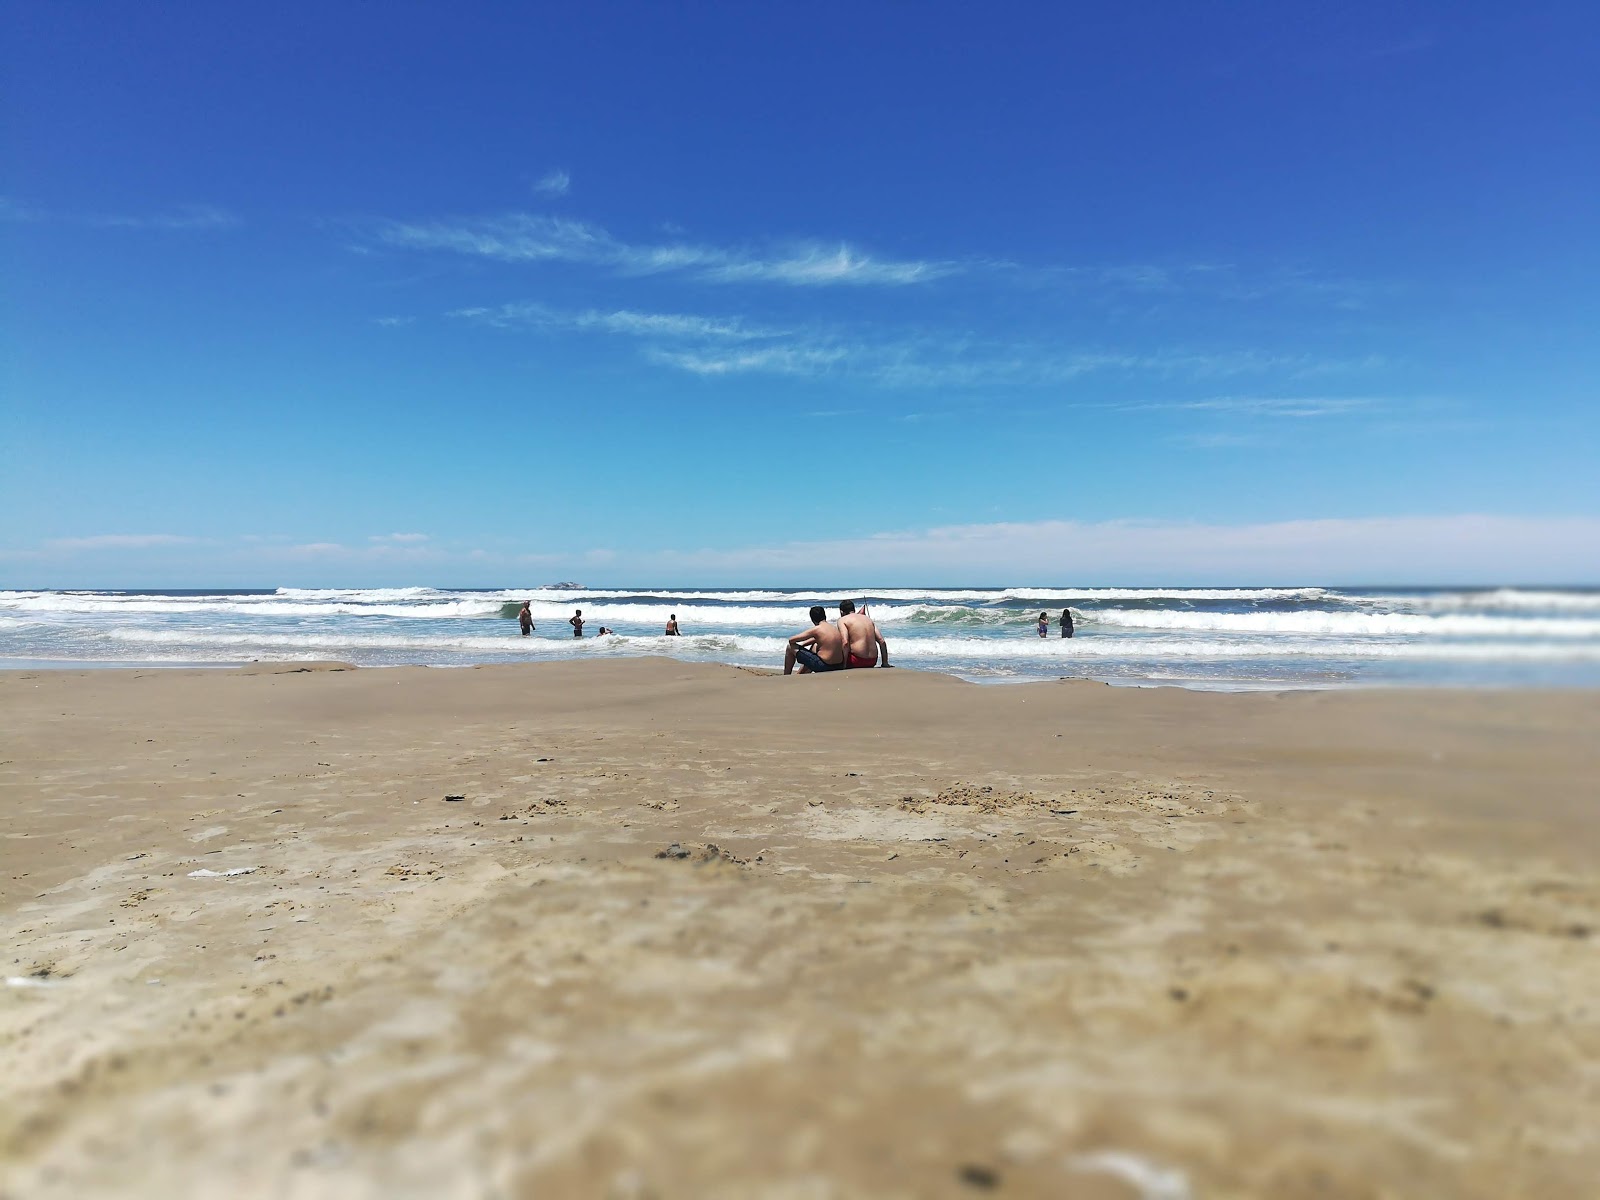 Foto af Praia do Mar Grosso - populært sted blandt afslapningskendere